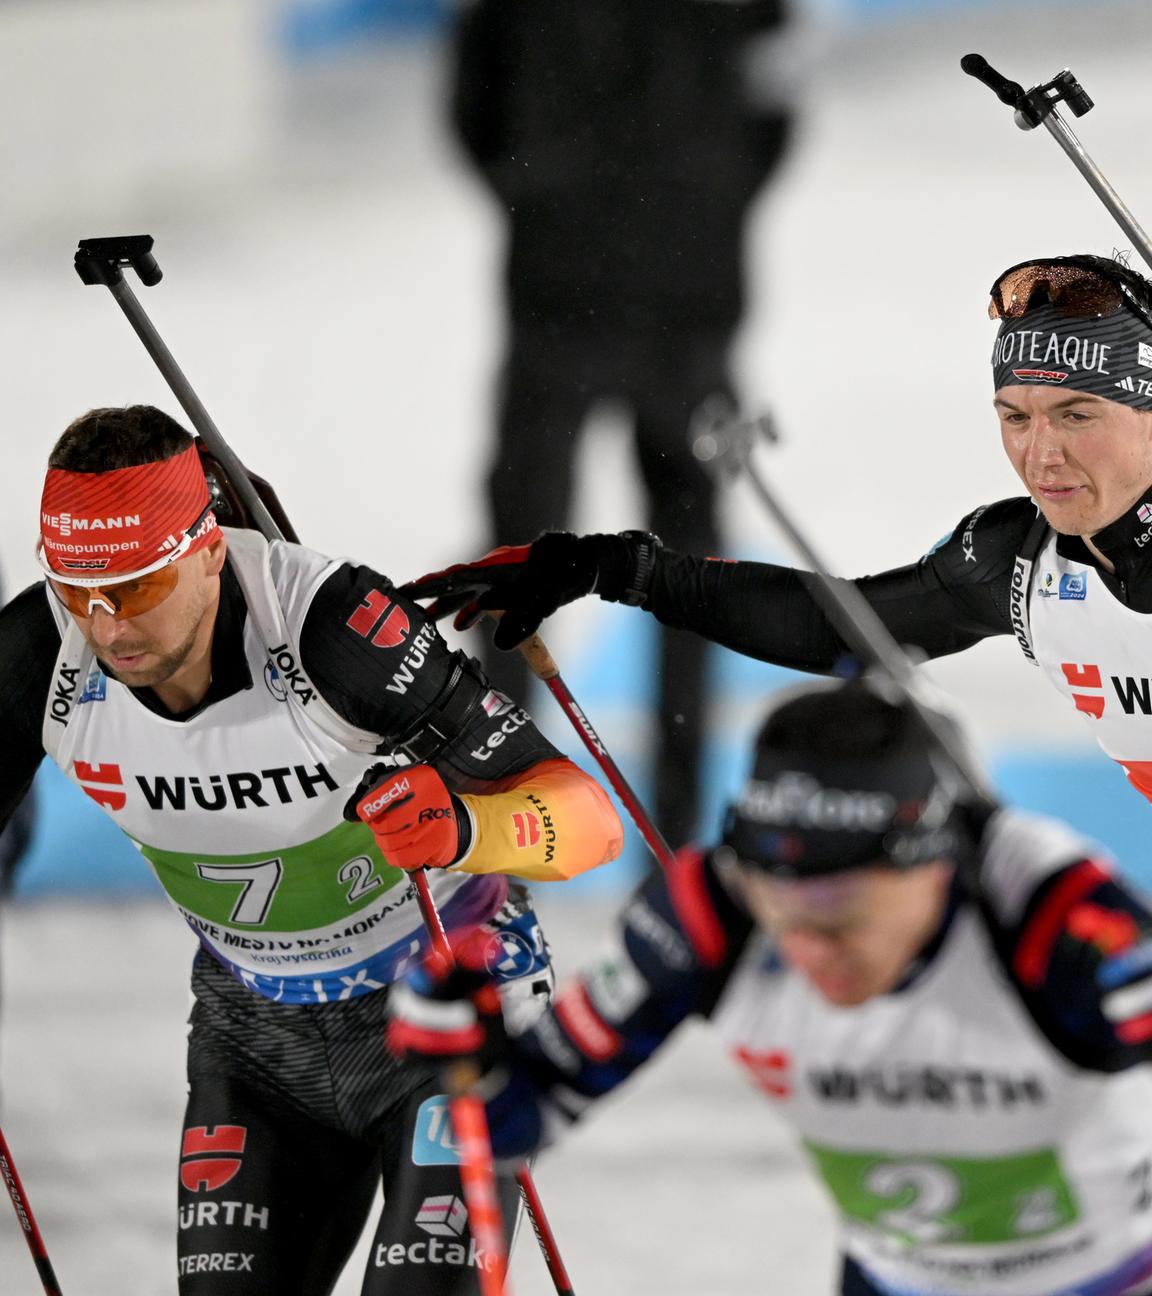 Nove Mesto Na Morave, Biathlon-WM, Mixed-Staffel: Justus Strelow beim Wechsel auf den zweiten Läufer, Philipp Nawrath